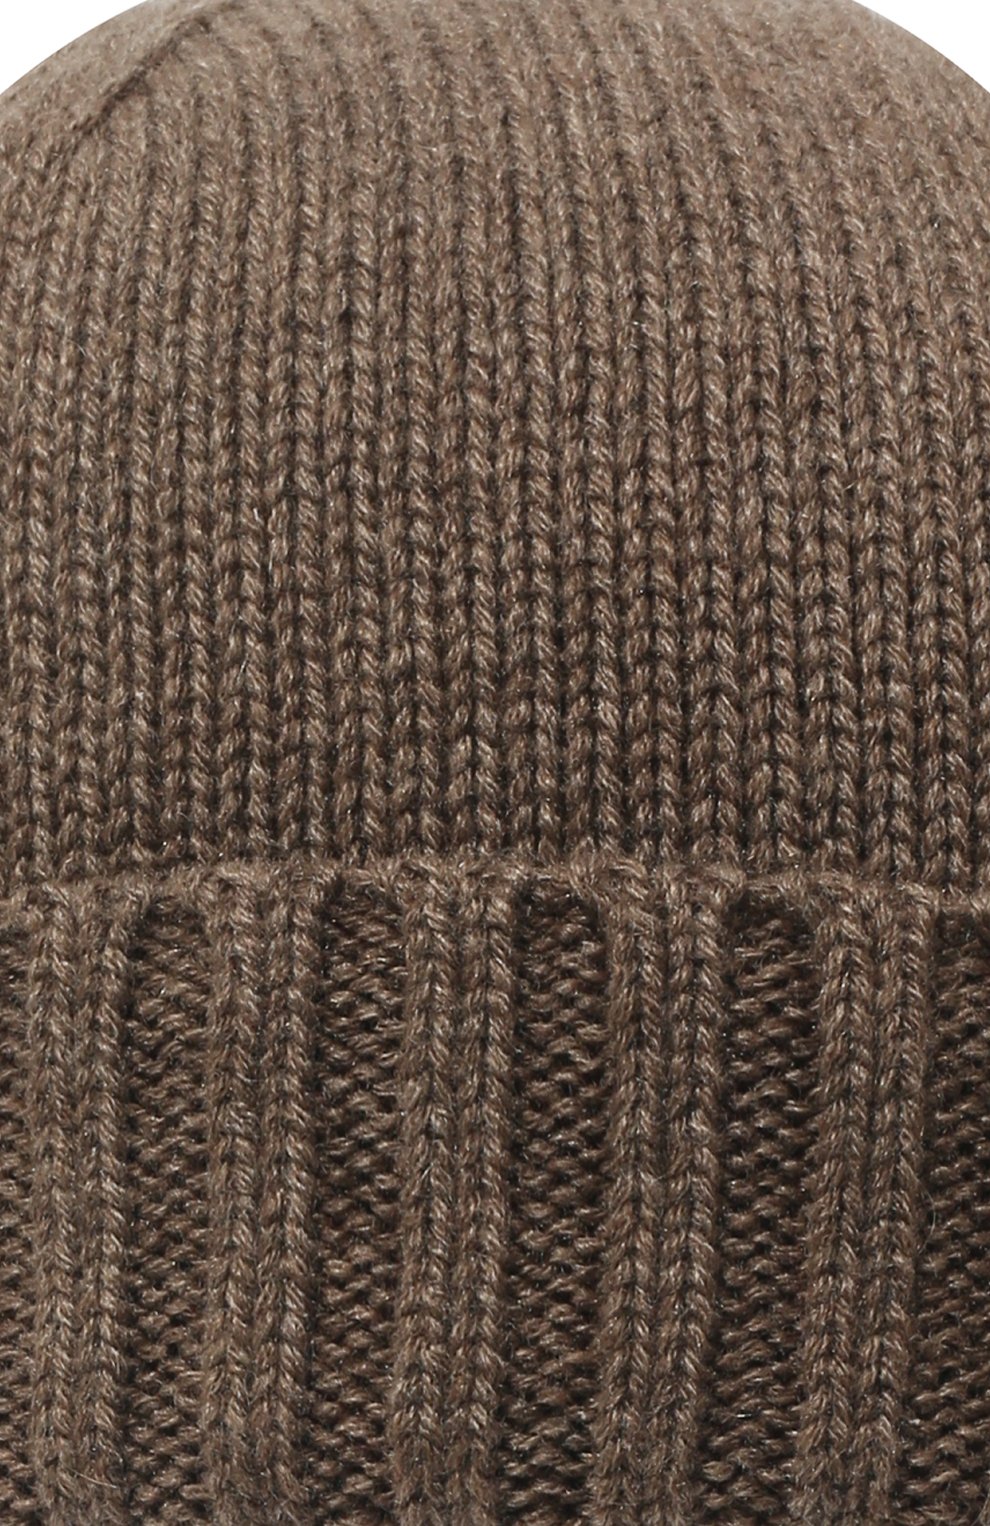 Мужская кашемировая шапка INVERNI коричневого цвета, арт. 2528 CM | Фото 3 (Материал: Текстиль, Кашемир, Шерсть; Кросс-КТ: Трикотаж)